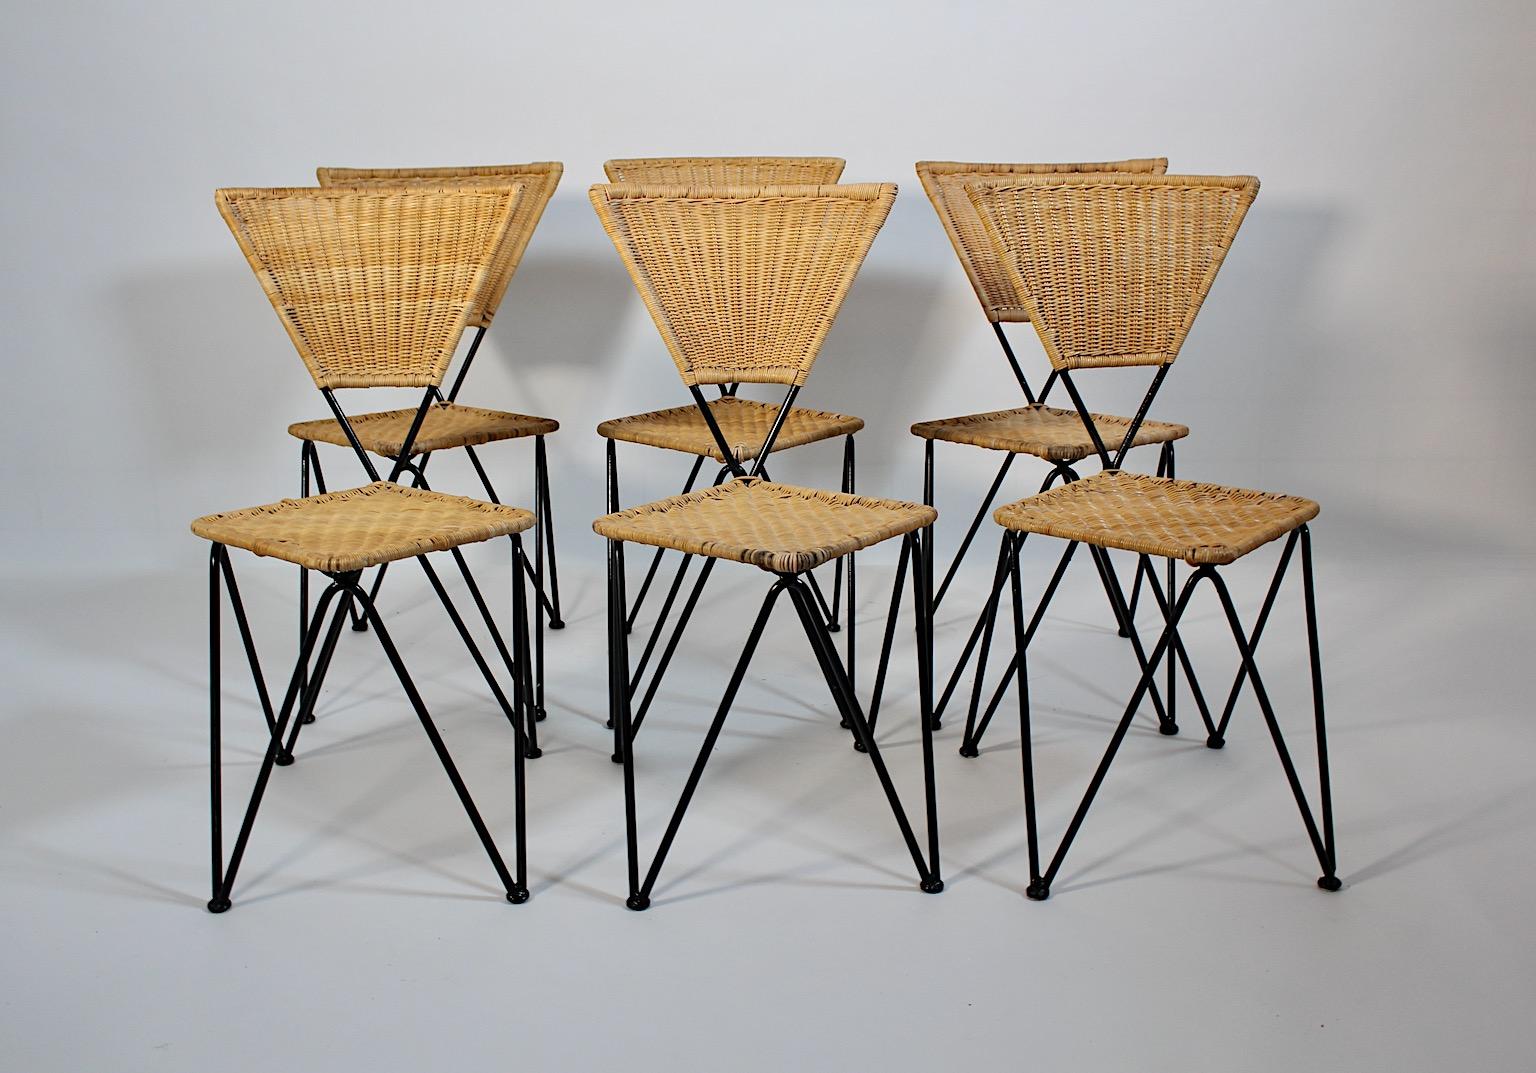 Mid Century Modern organische Vintage sechs Esszimmerstühle aus Rattan und 
Black Metal von Sonett 1950s Wien.
Ein charmantes Set von sechs Esszimmerstühle oder Stühle Dreiecksform aus geflochtenem Rattan für Sitz und Rücken und schwarz lackiertem